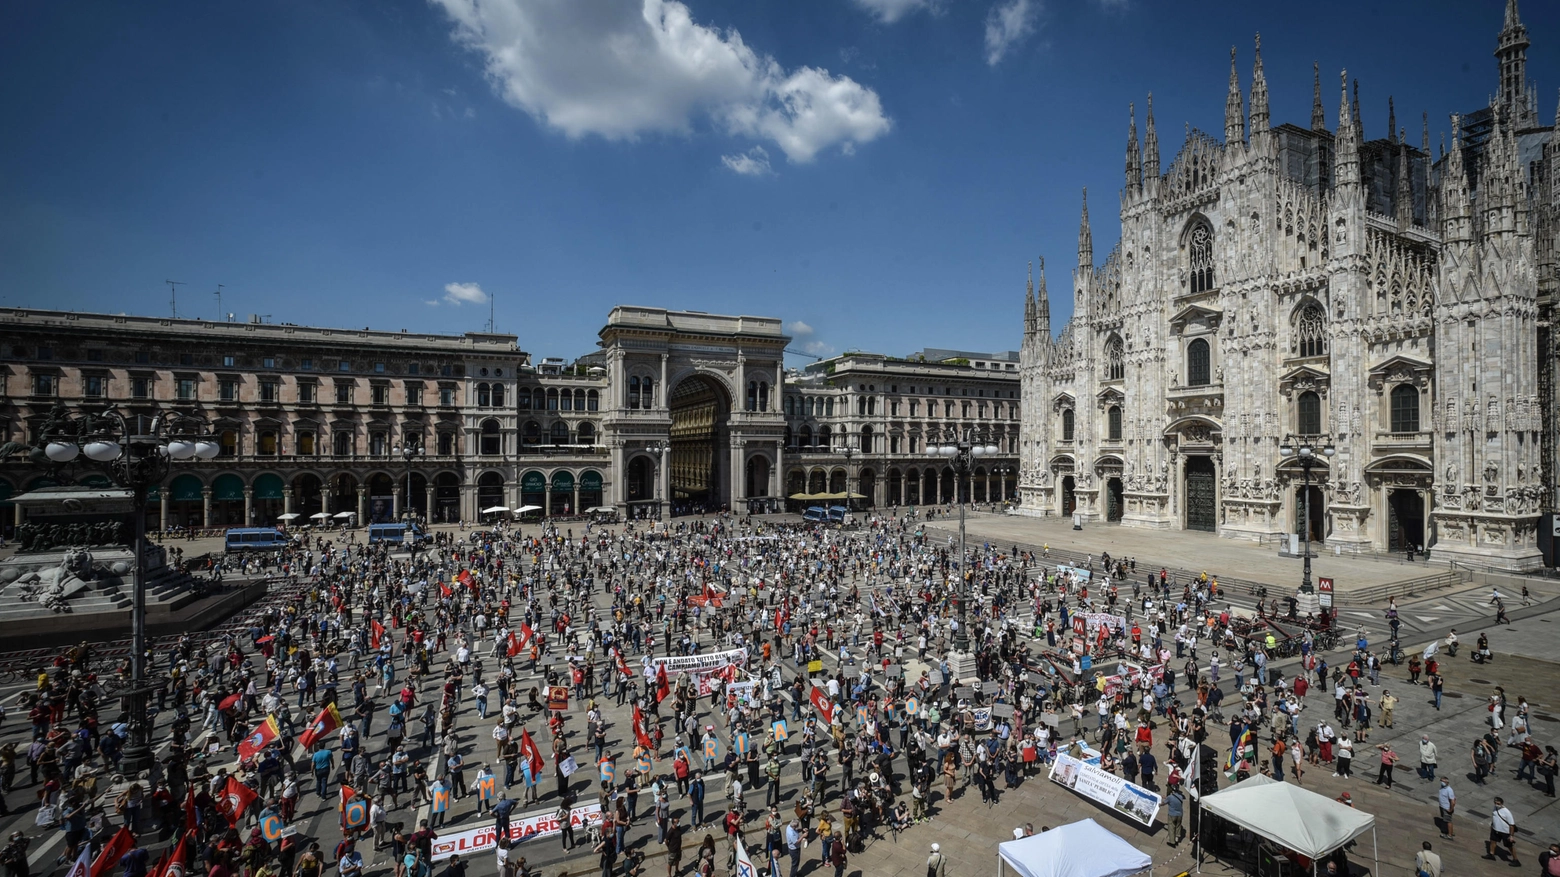 "Salviamo la Lombardia": protesta contro la Regione in piazza Duomo 